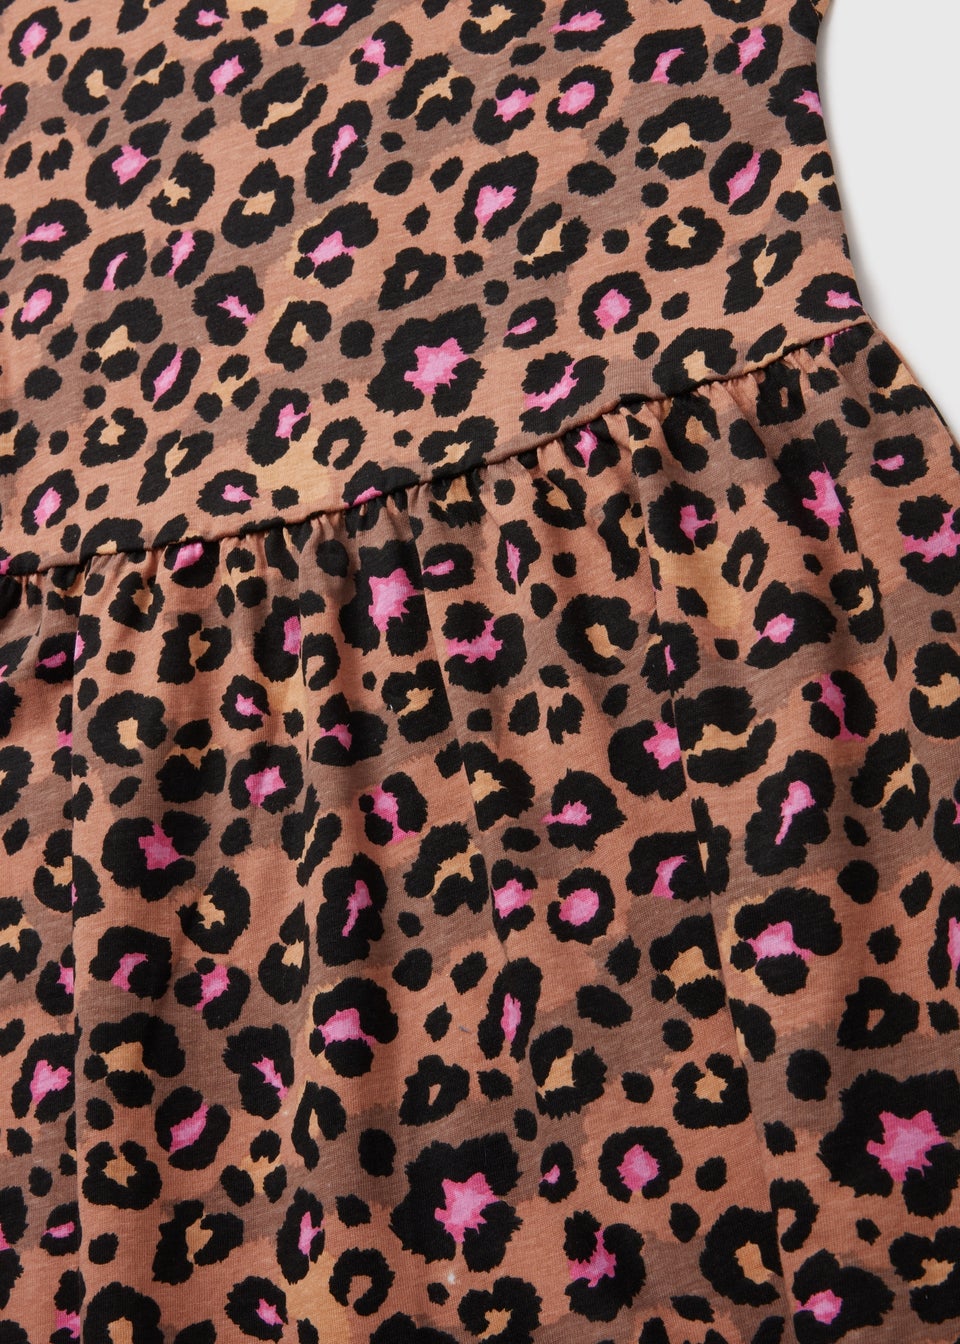 Girls Leopard Print Dress (7-13yrs)